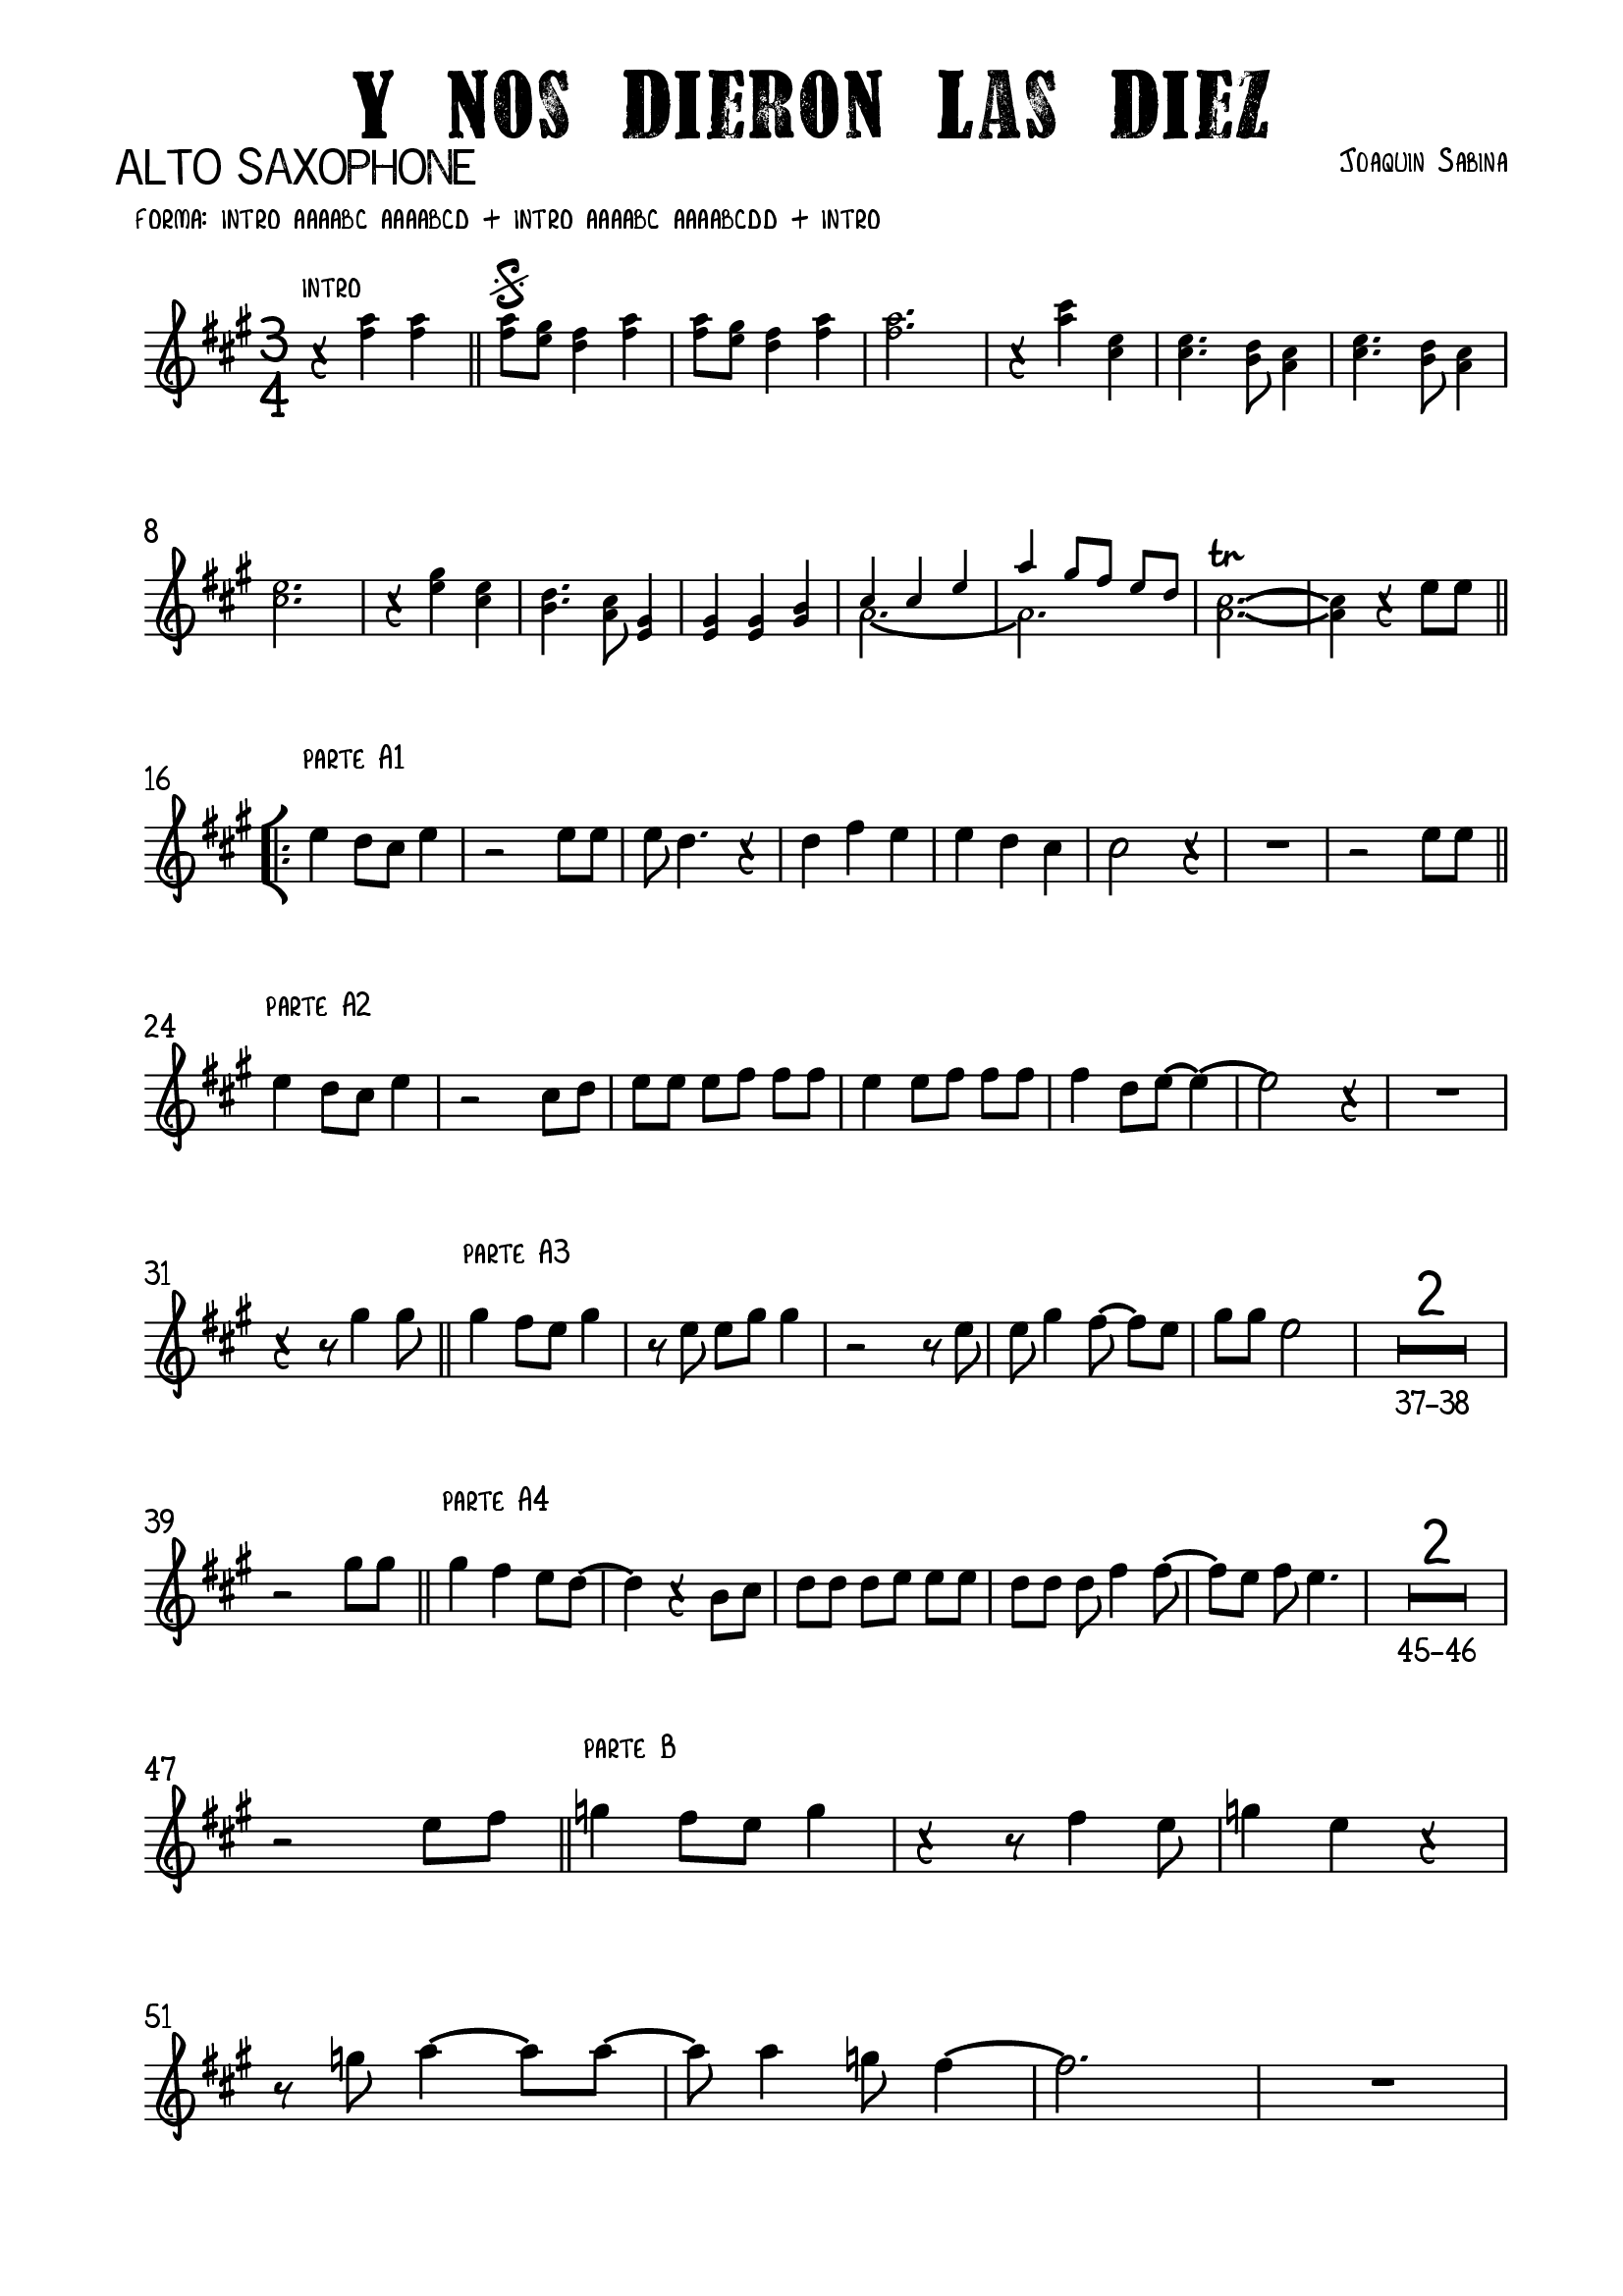 PDF) Y Nos Dieron Las Diez (Joaquin Sabina) Alto Saxophone - DOKUMEN.TIPS